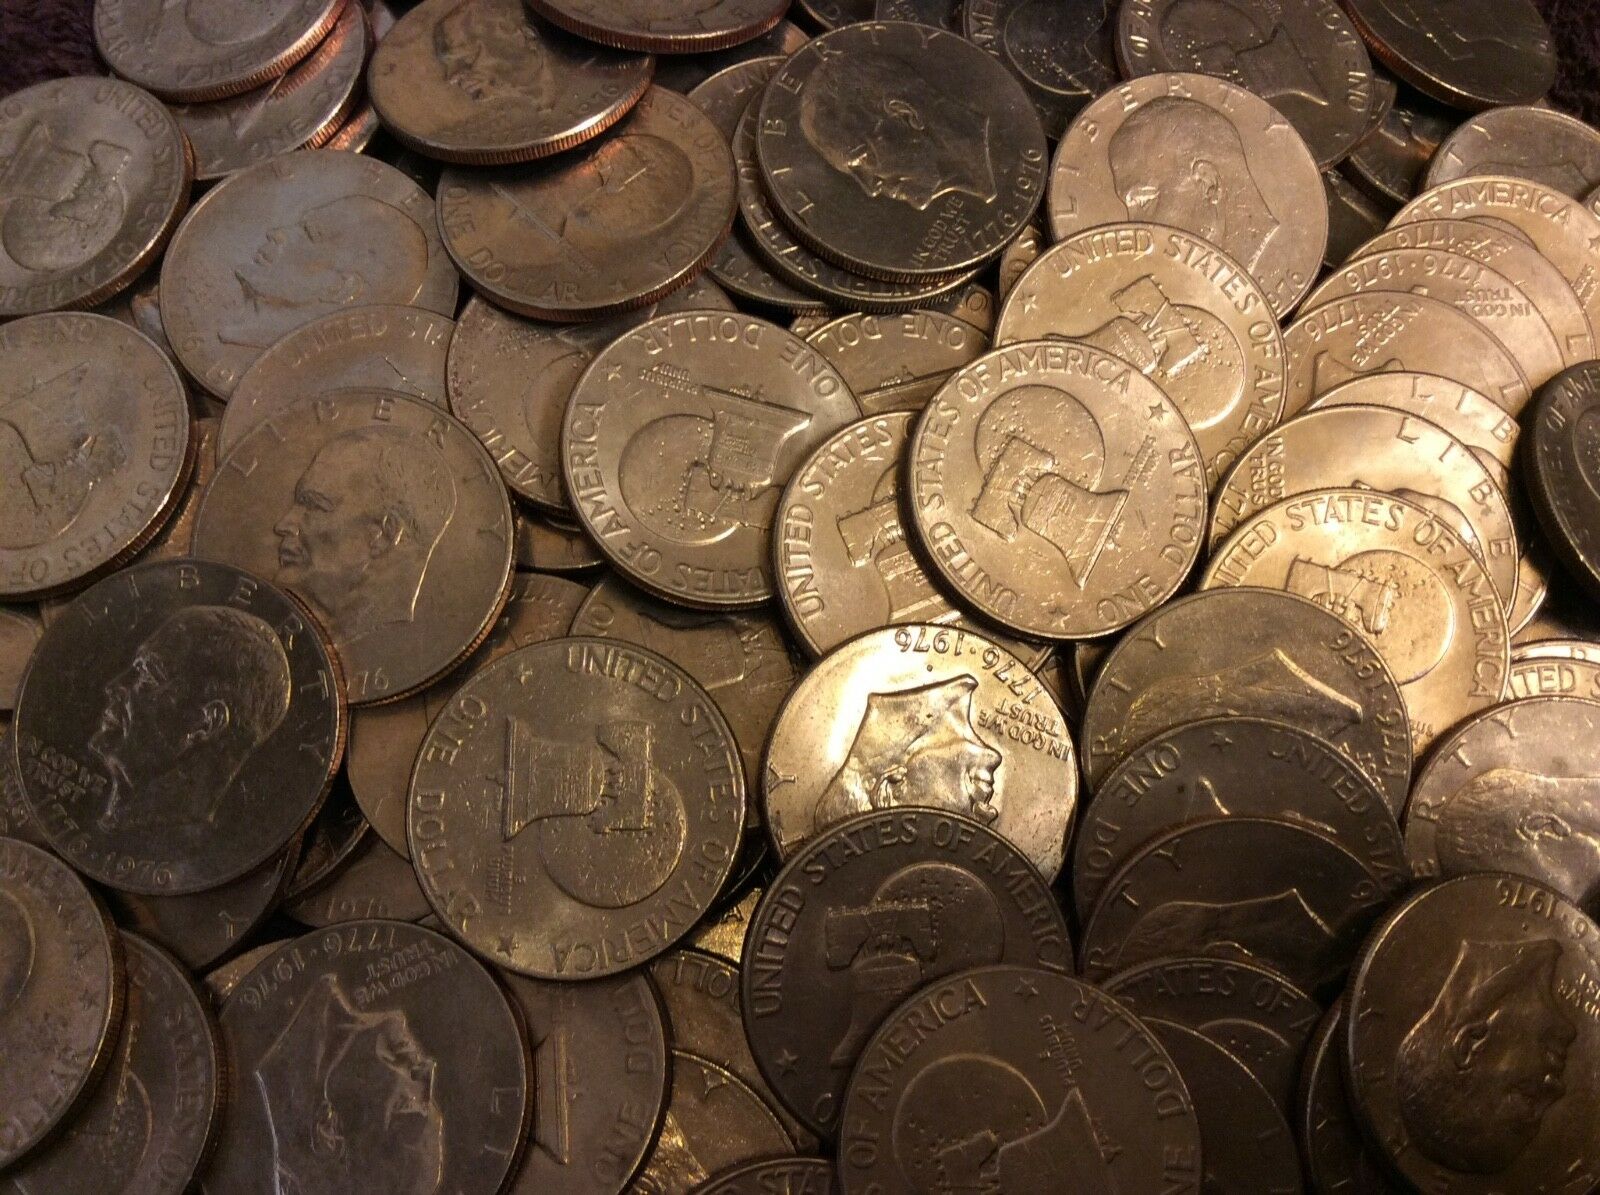 Free Coin Tubes 100  Bicentennial Eisenhower (ike) Dollars Circulated